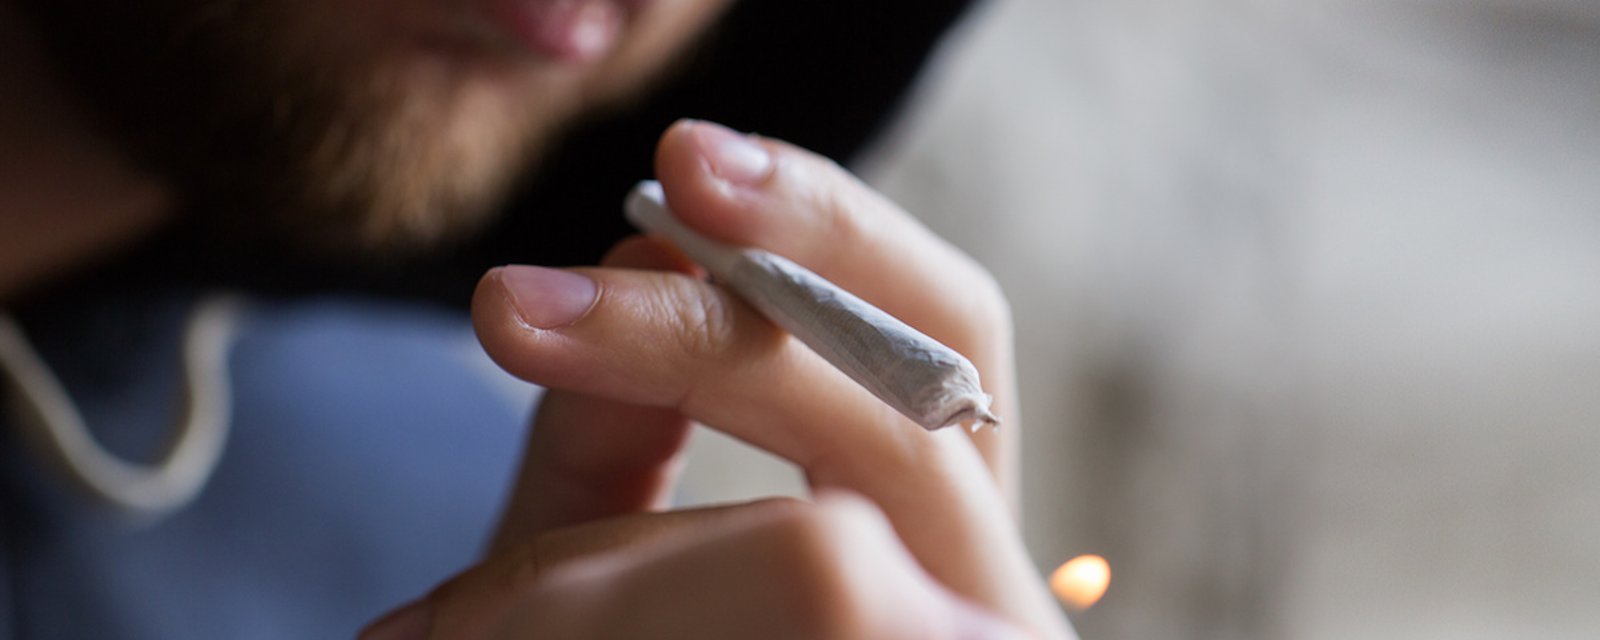 Fumer du cannabis fait vieillir le cerveau de près de trois ans en moyenne, selon une nouvelle étude